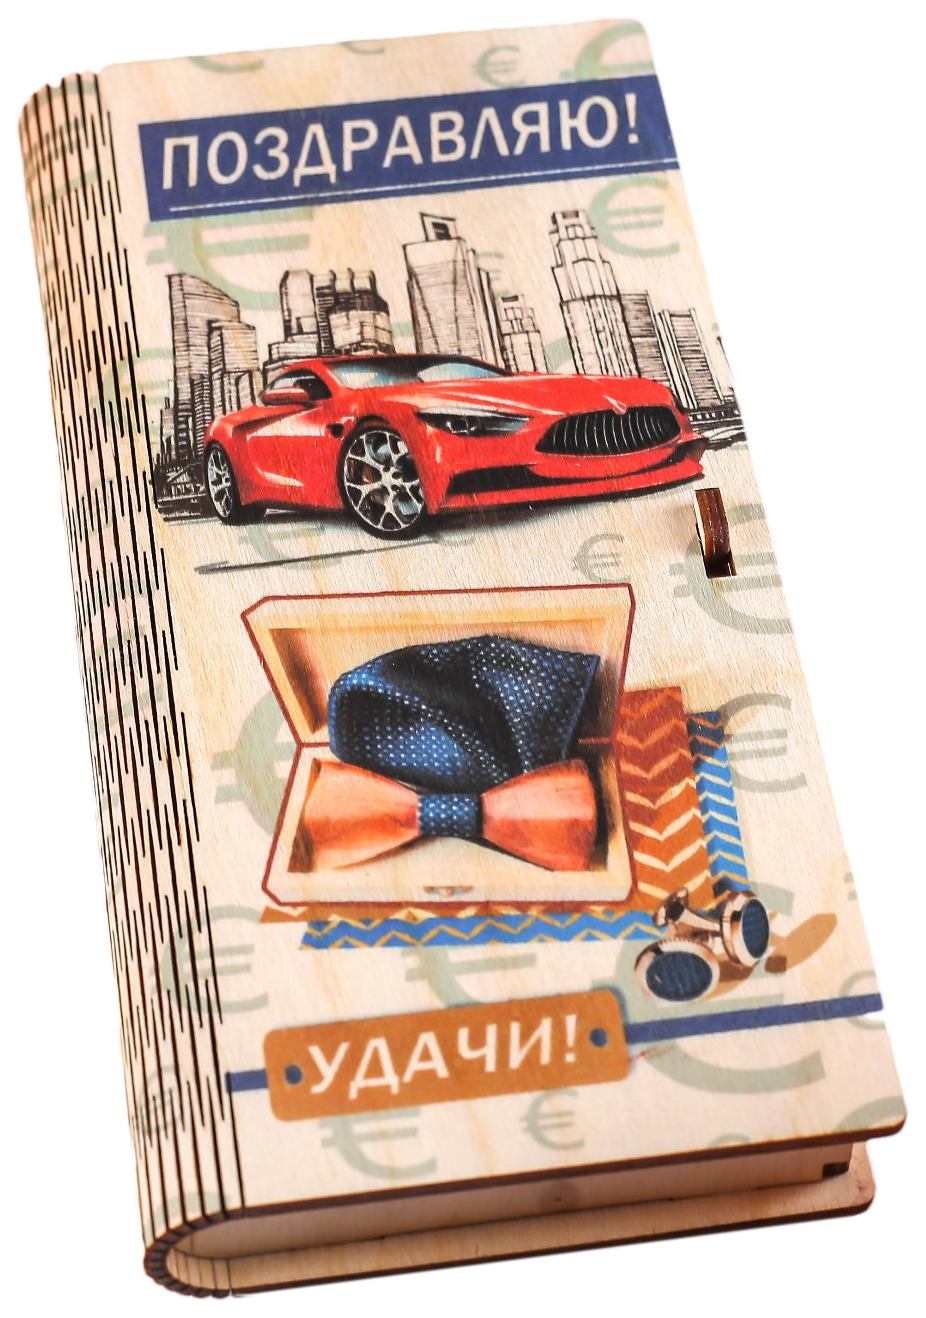 фото Конверт деревянный с печатью поздравляю! красный автомобиль стильная открытка